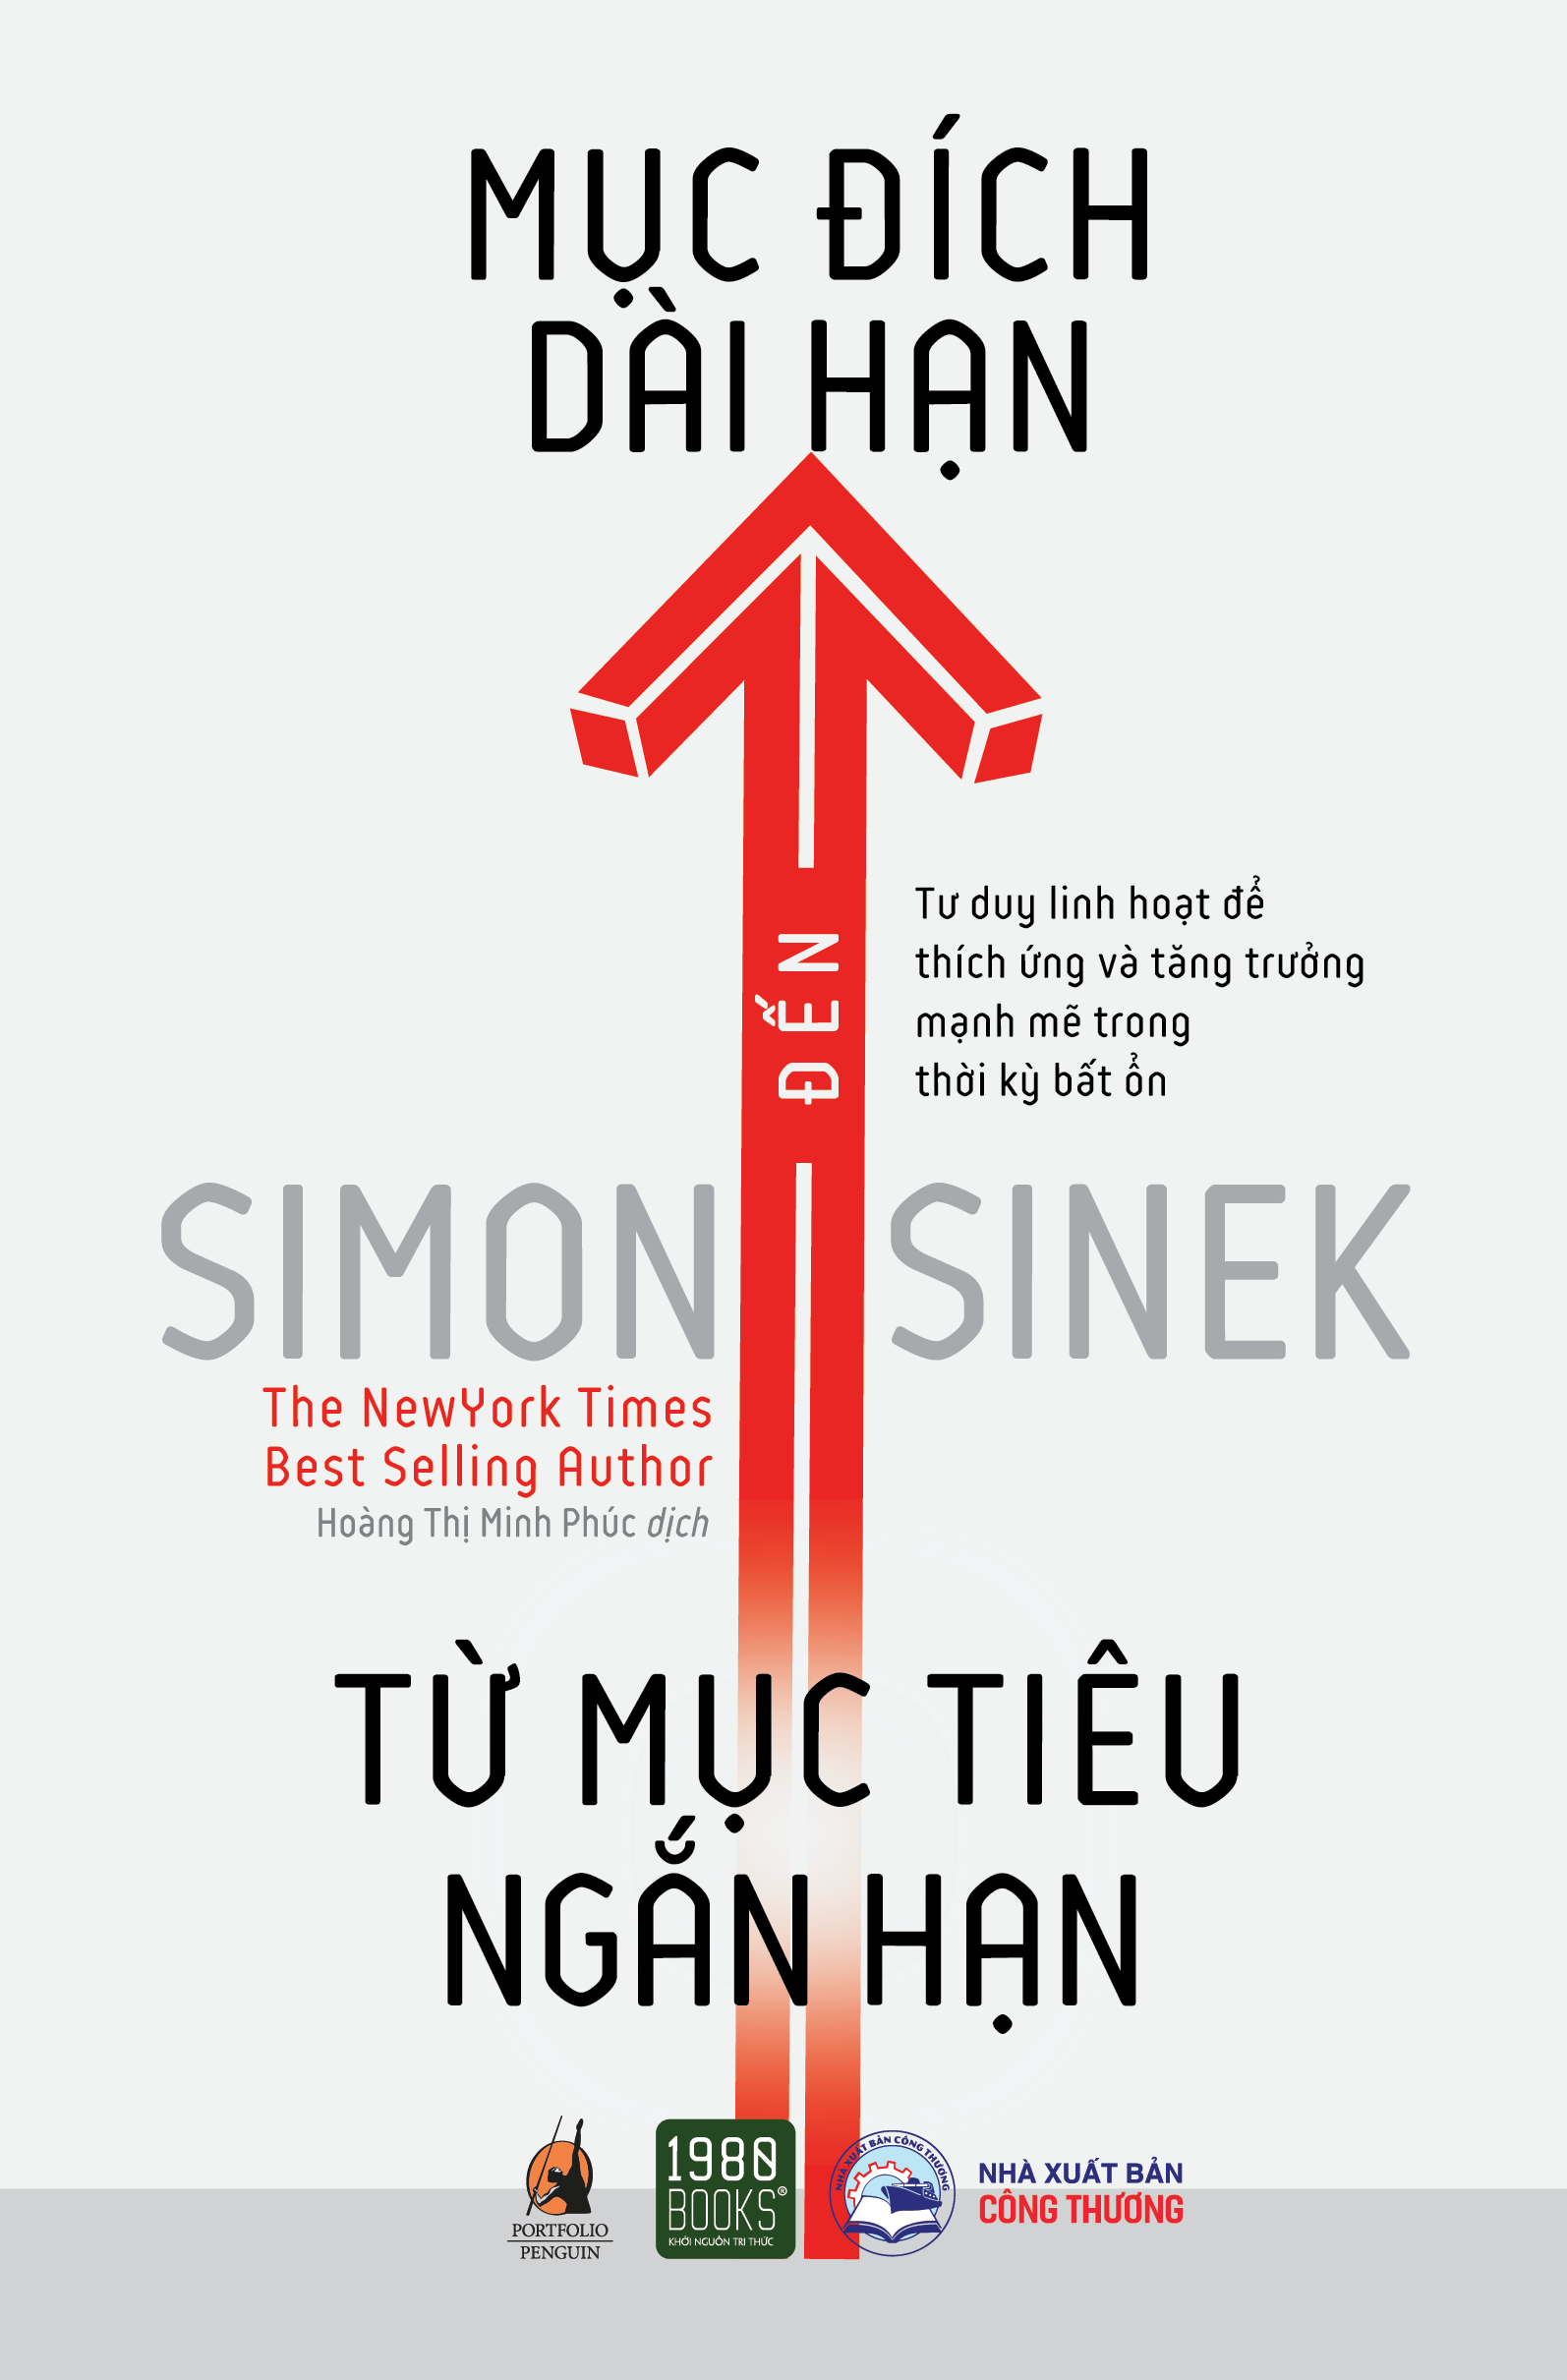 Từ mục tiêu ngắn hạn đến mục đích dài hạn - Simon Sinek